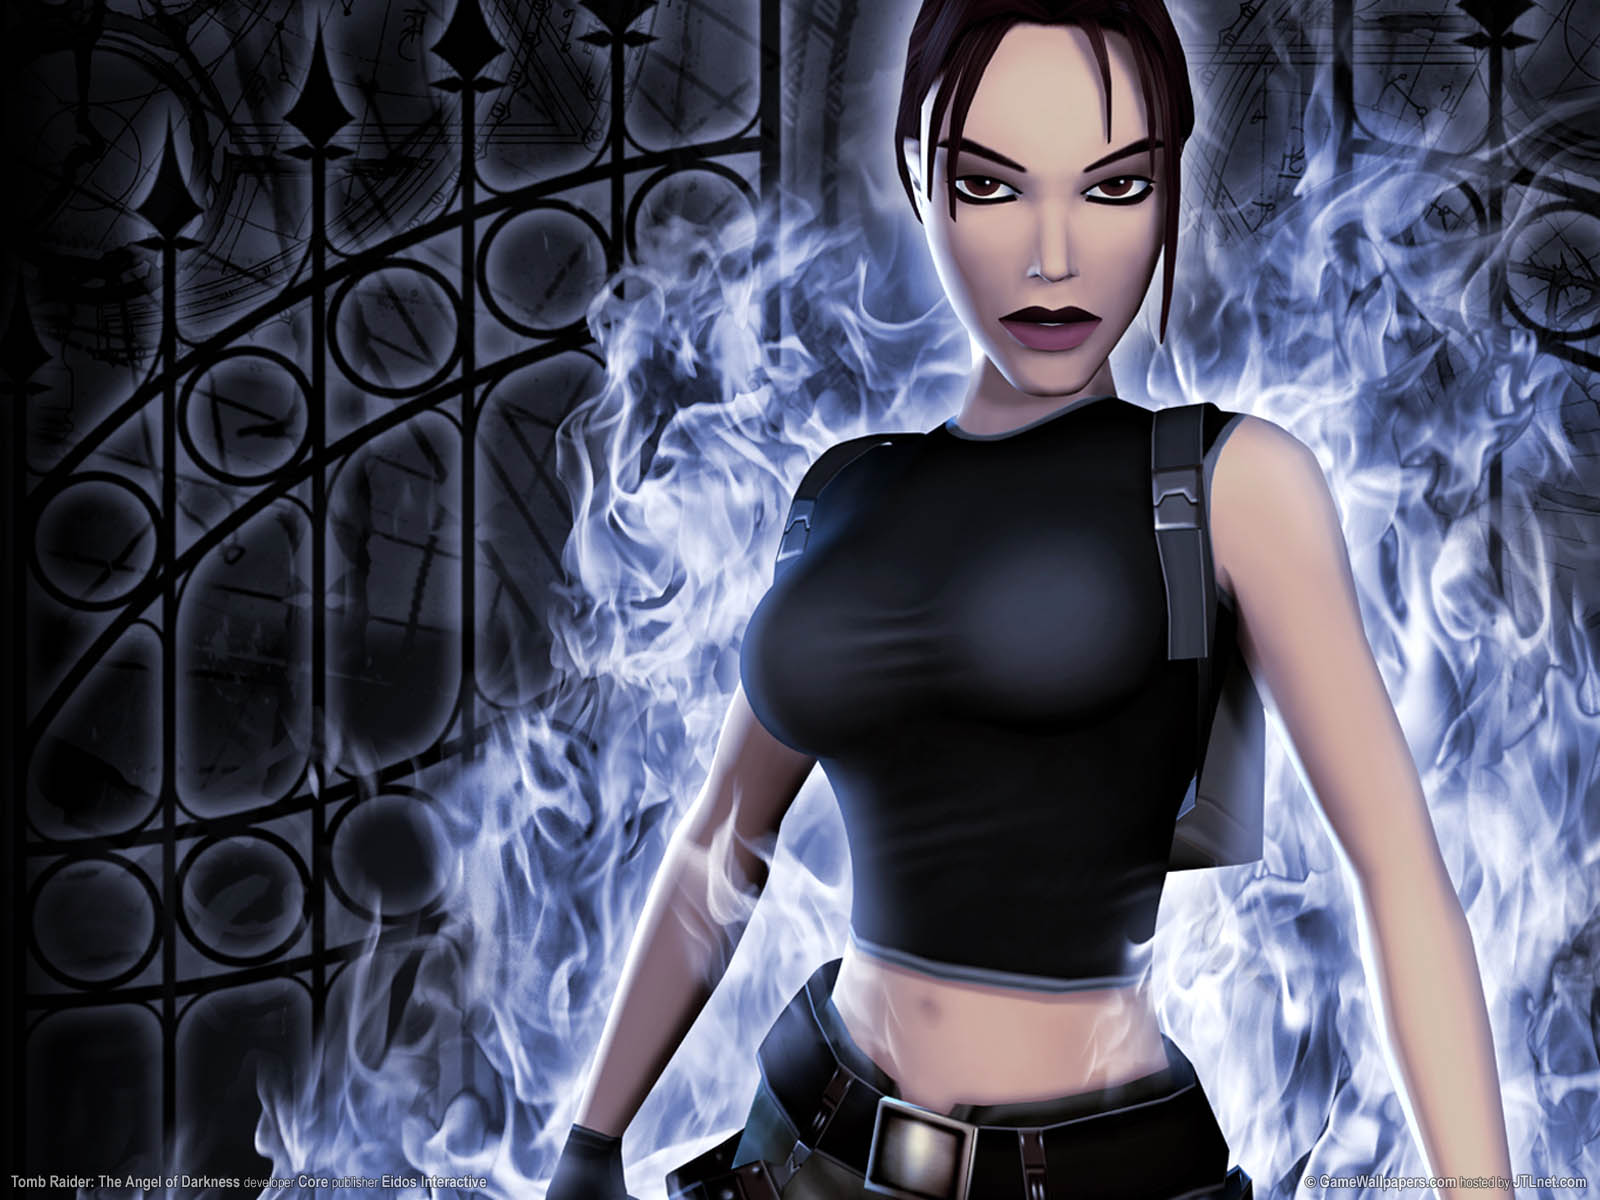 Tomb Raider: The Angel of Darkness fond d'cran 10 1600x1200